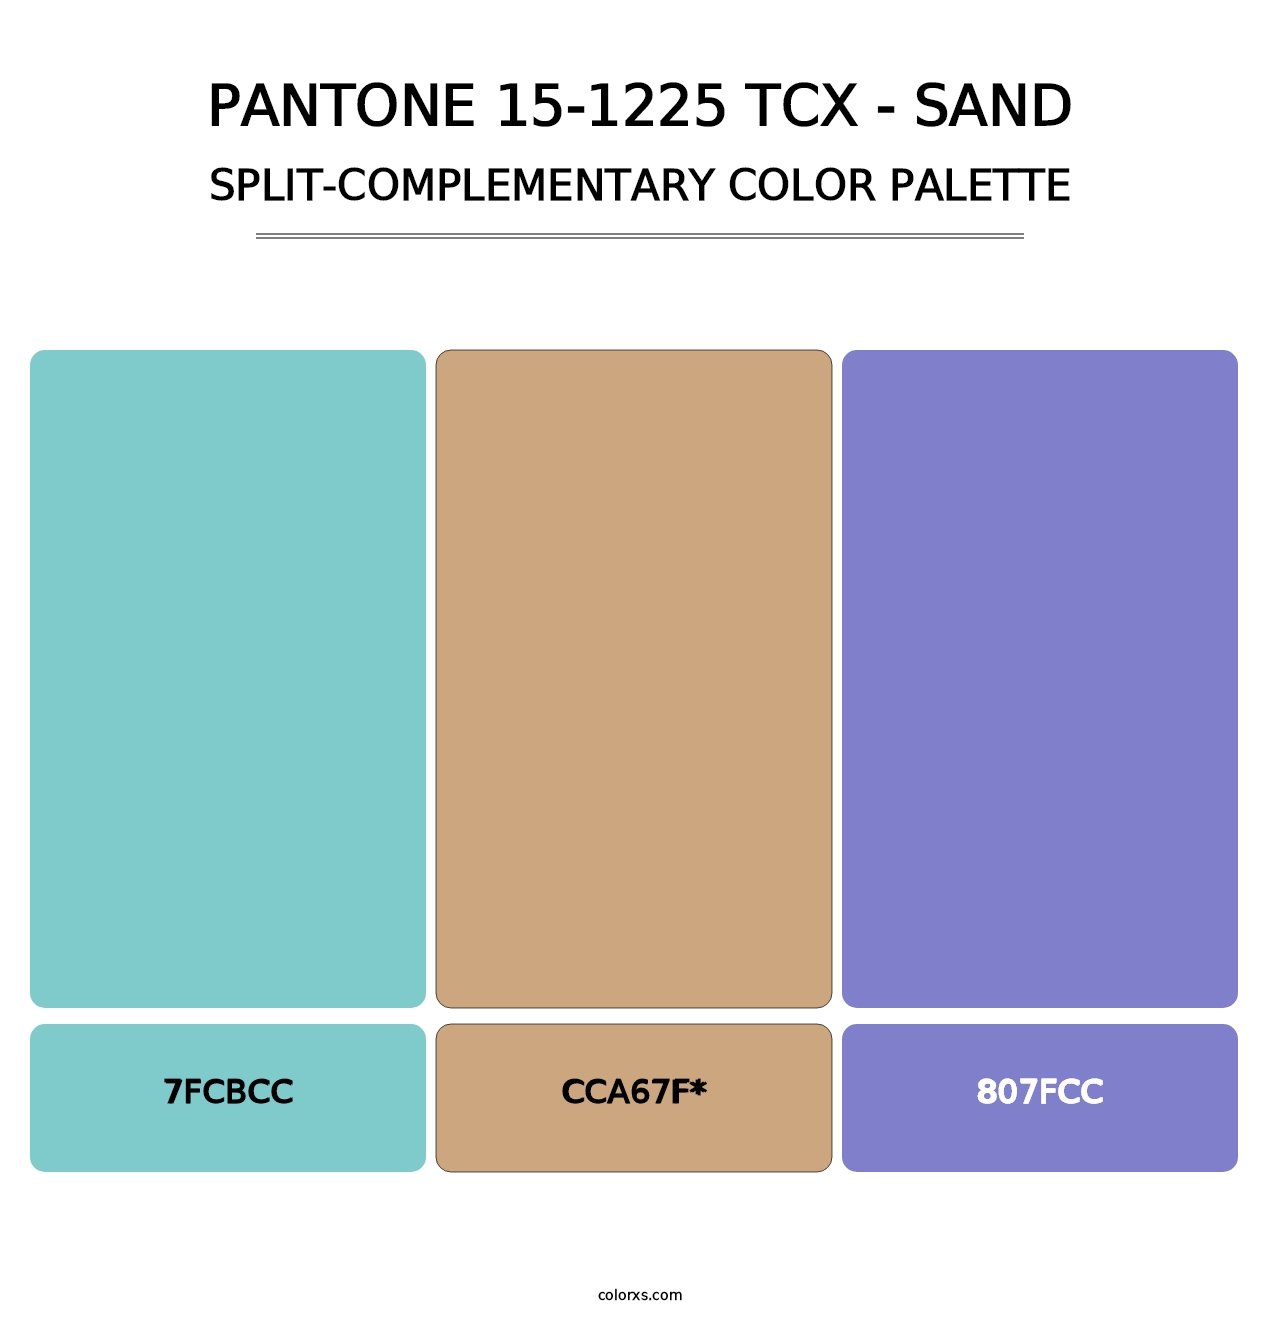 PANTONE 15-1225 TCX - Sand - Split-Complementary Color Palette